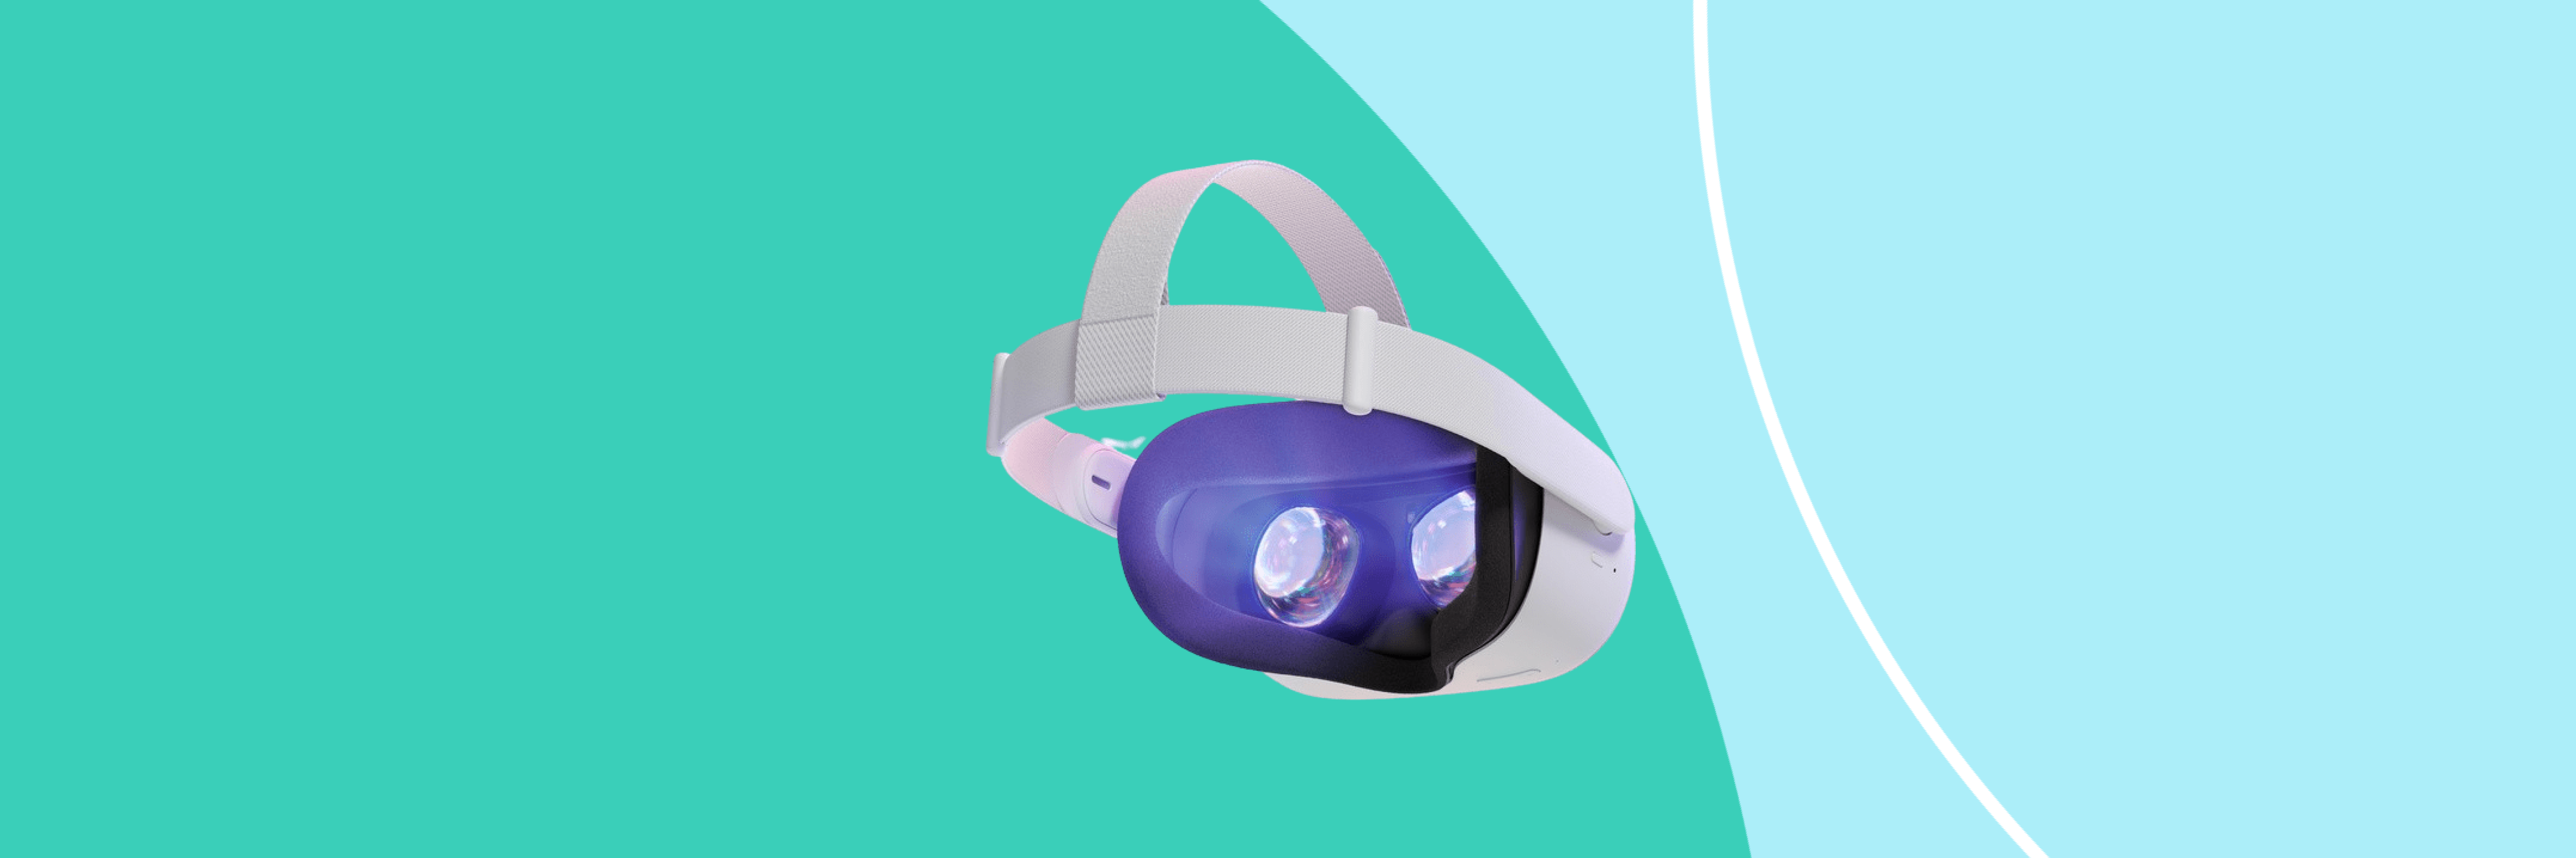 Gafas de realidad virtual para entrar de lleno en el metaverso